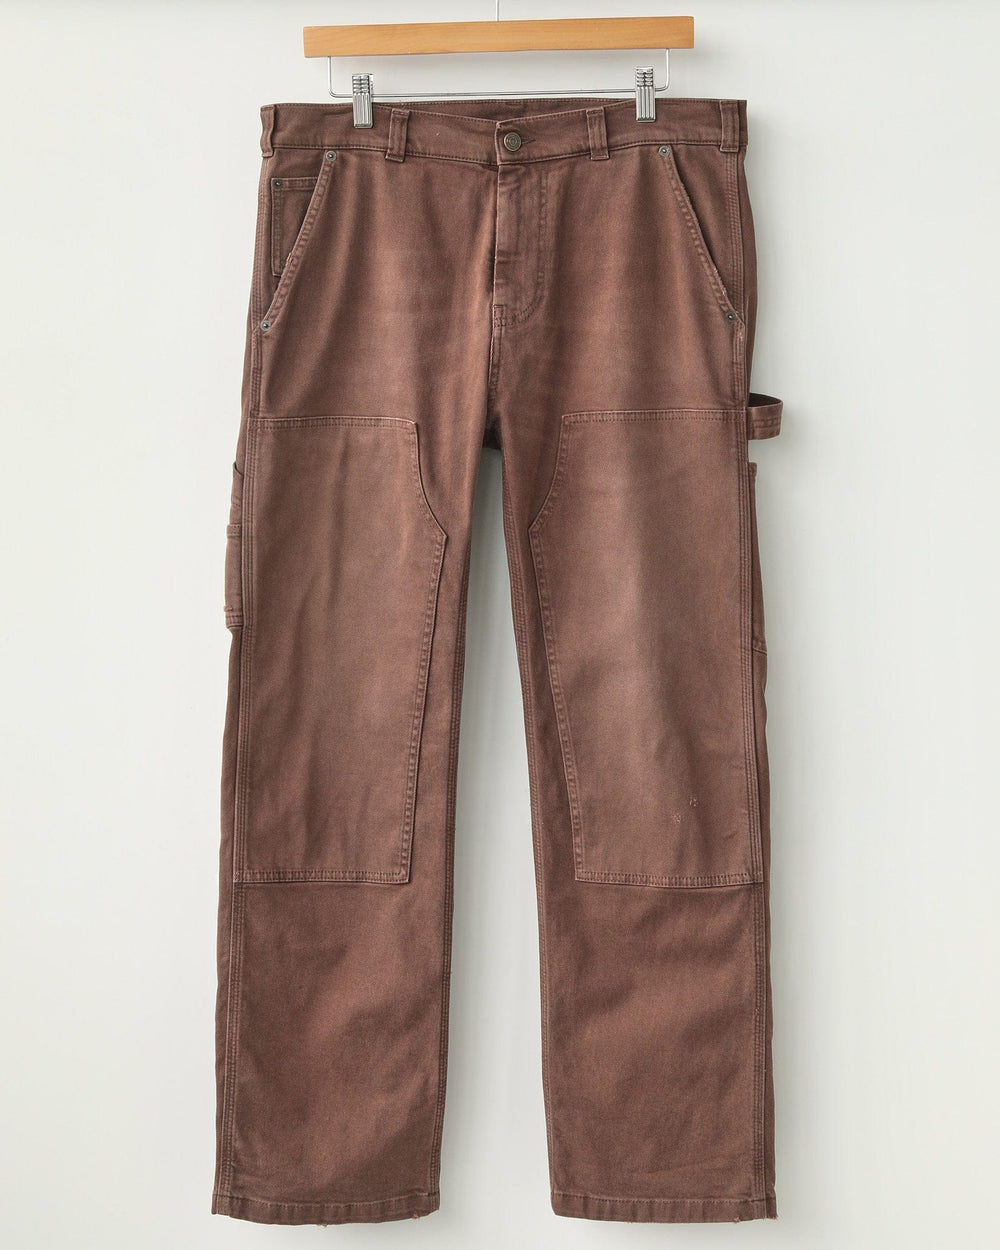 Sole et. Al Metro Flared Carpenter Denim Jeans : Brown